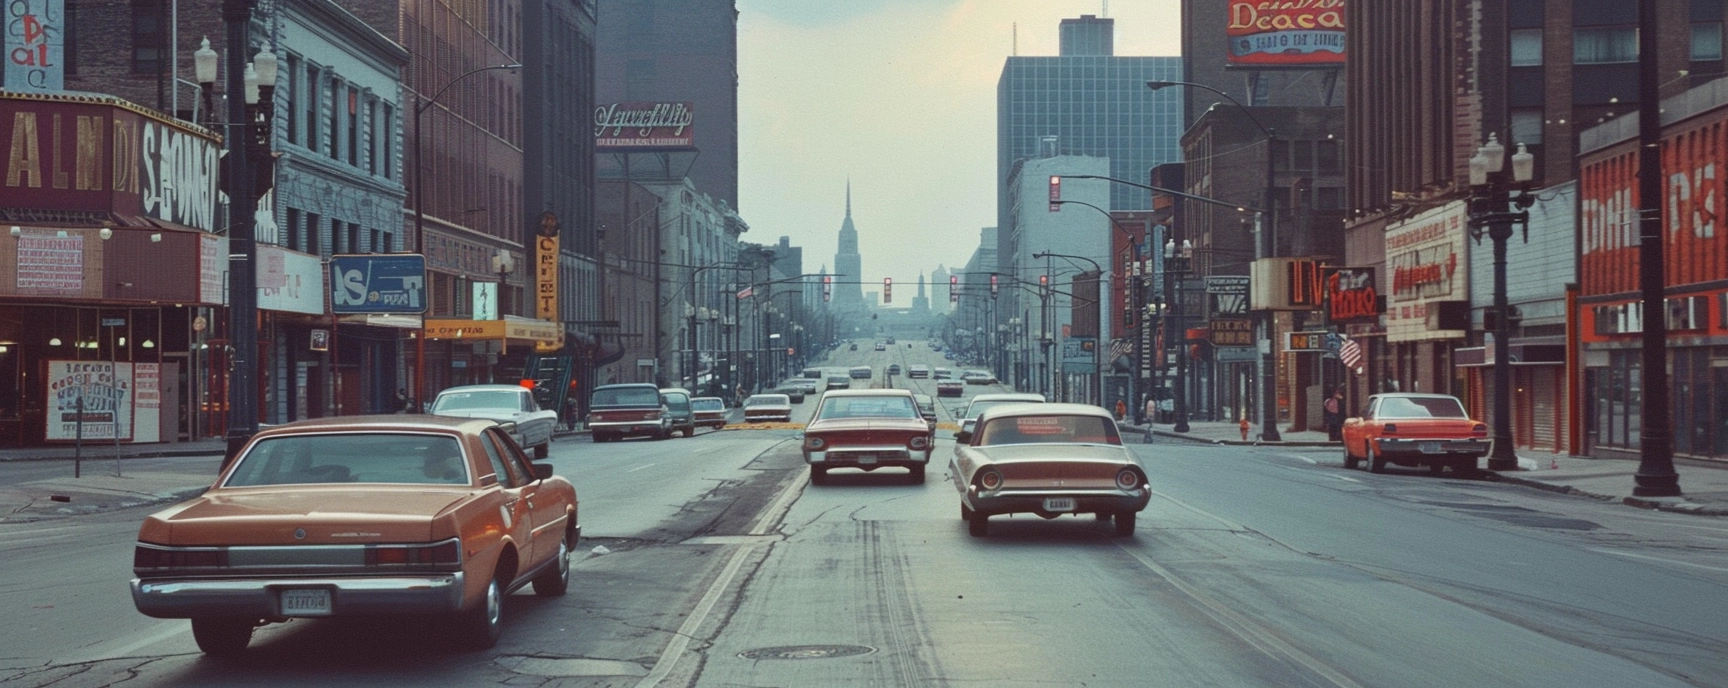 Detroit vintage photo image